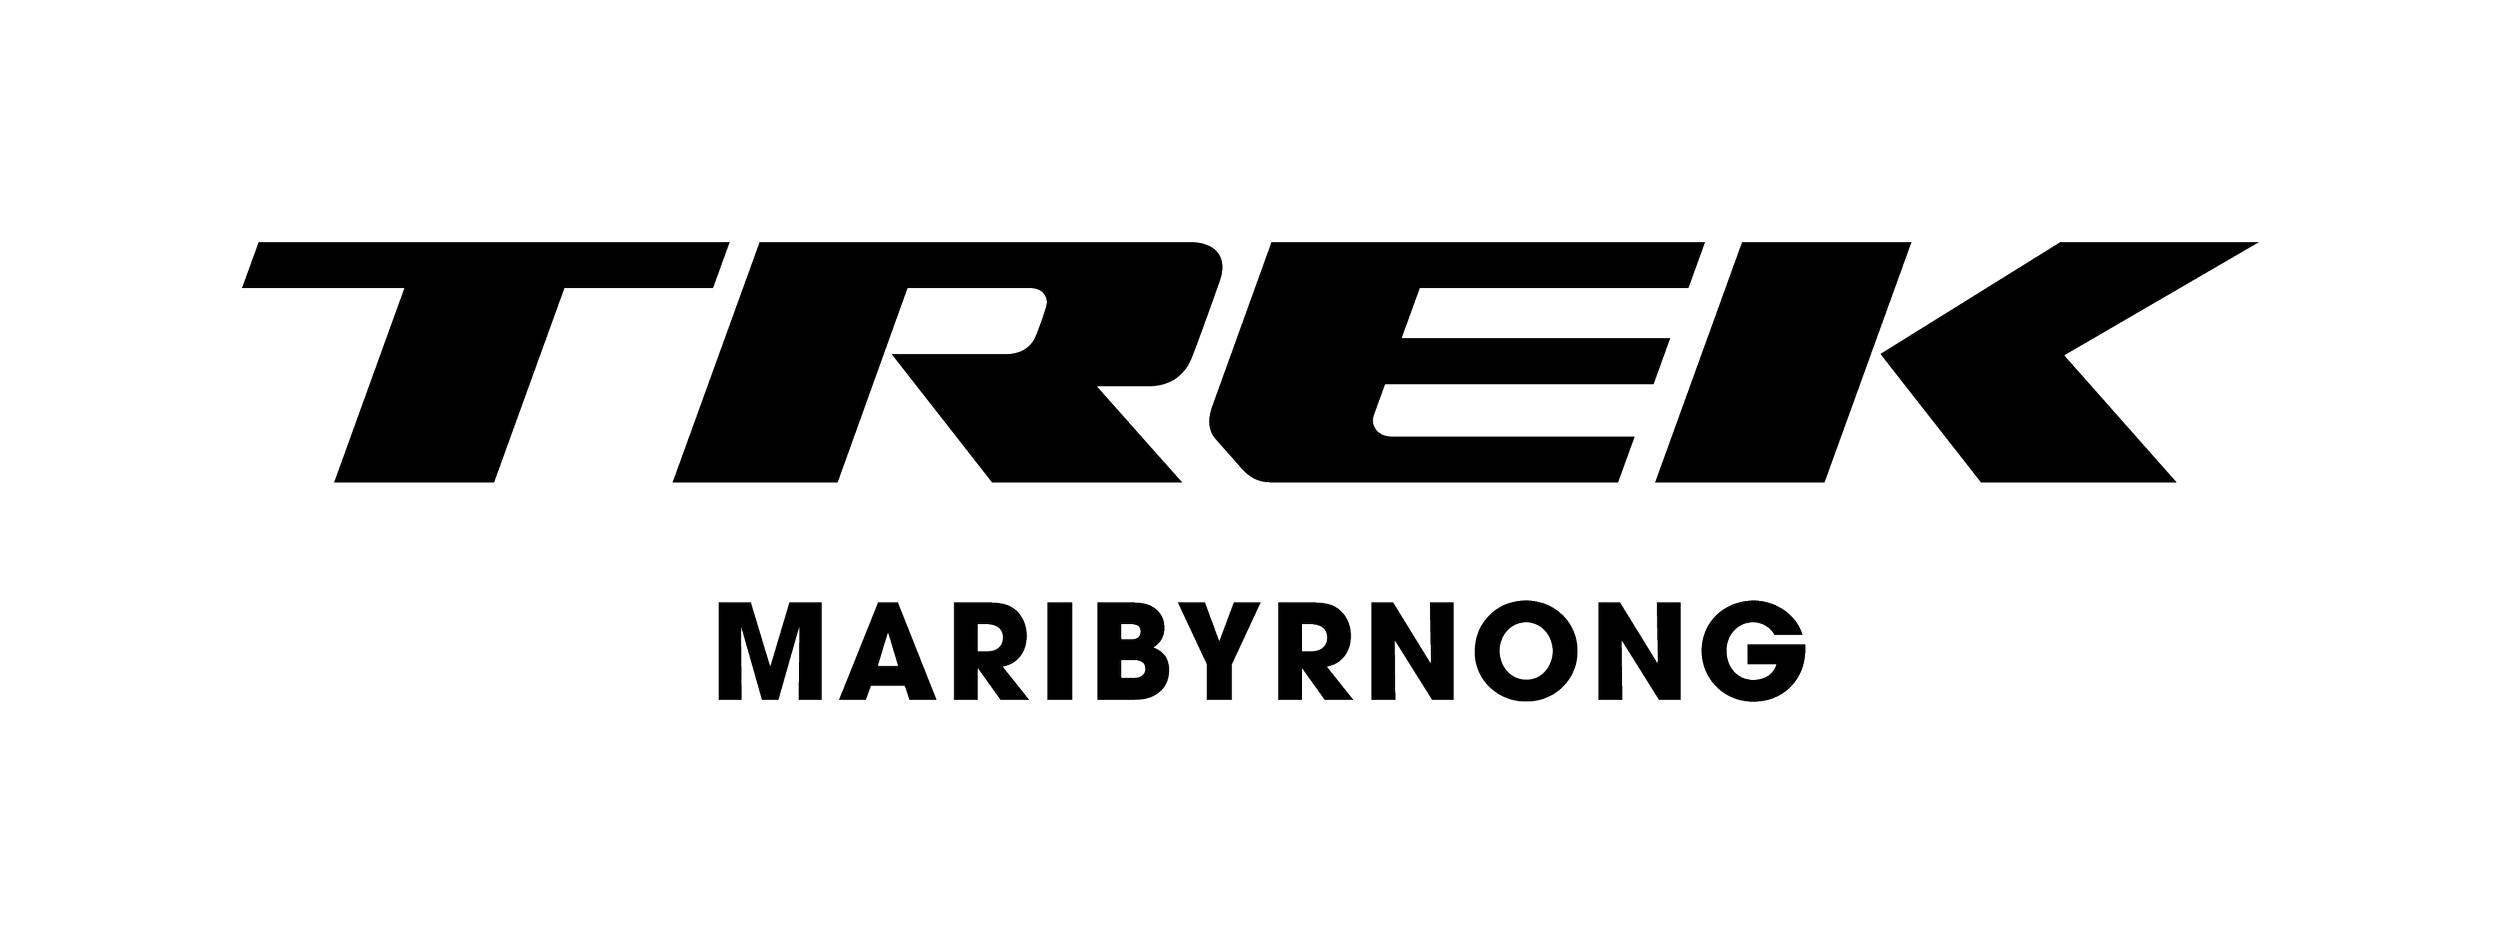 2018_Trek_logo_location_Maribyrnong_black.png